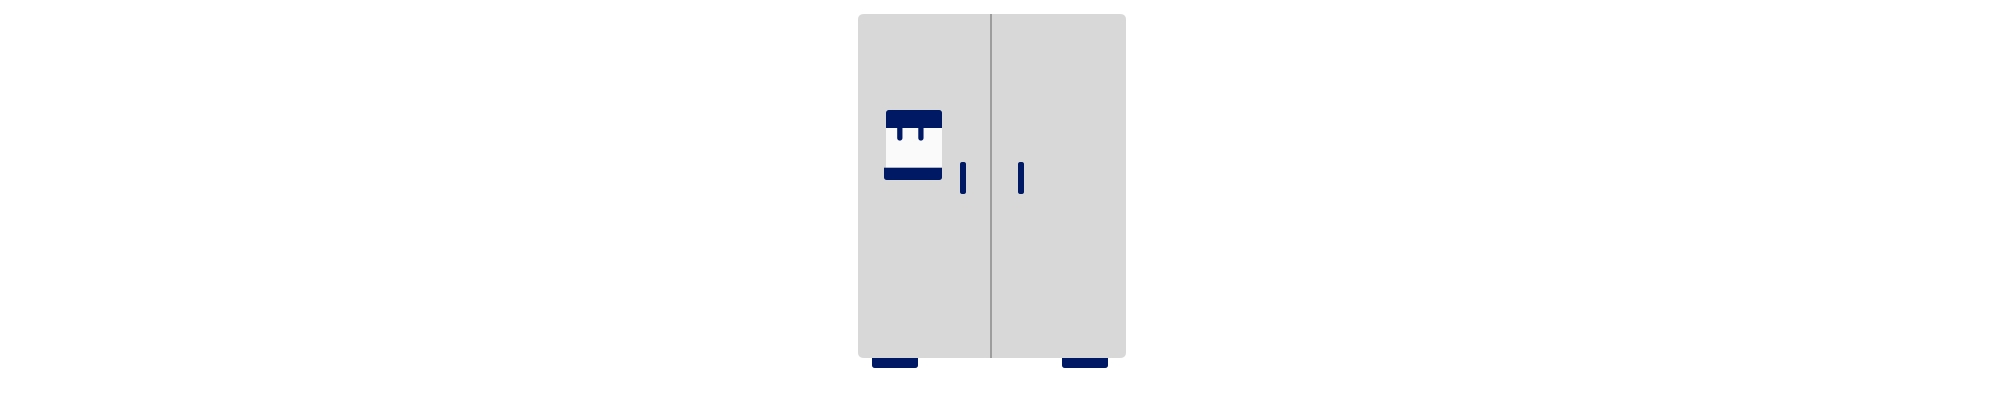 Icon refrigerator